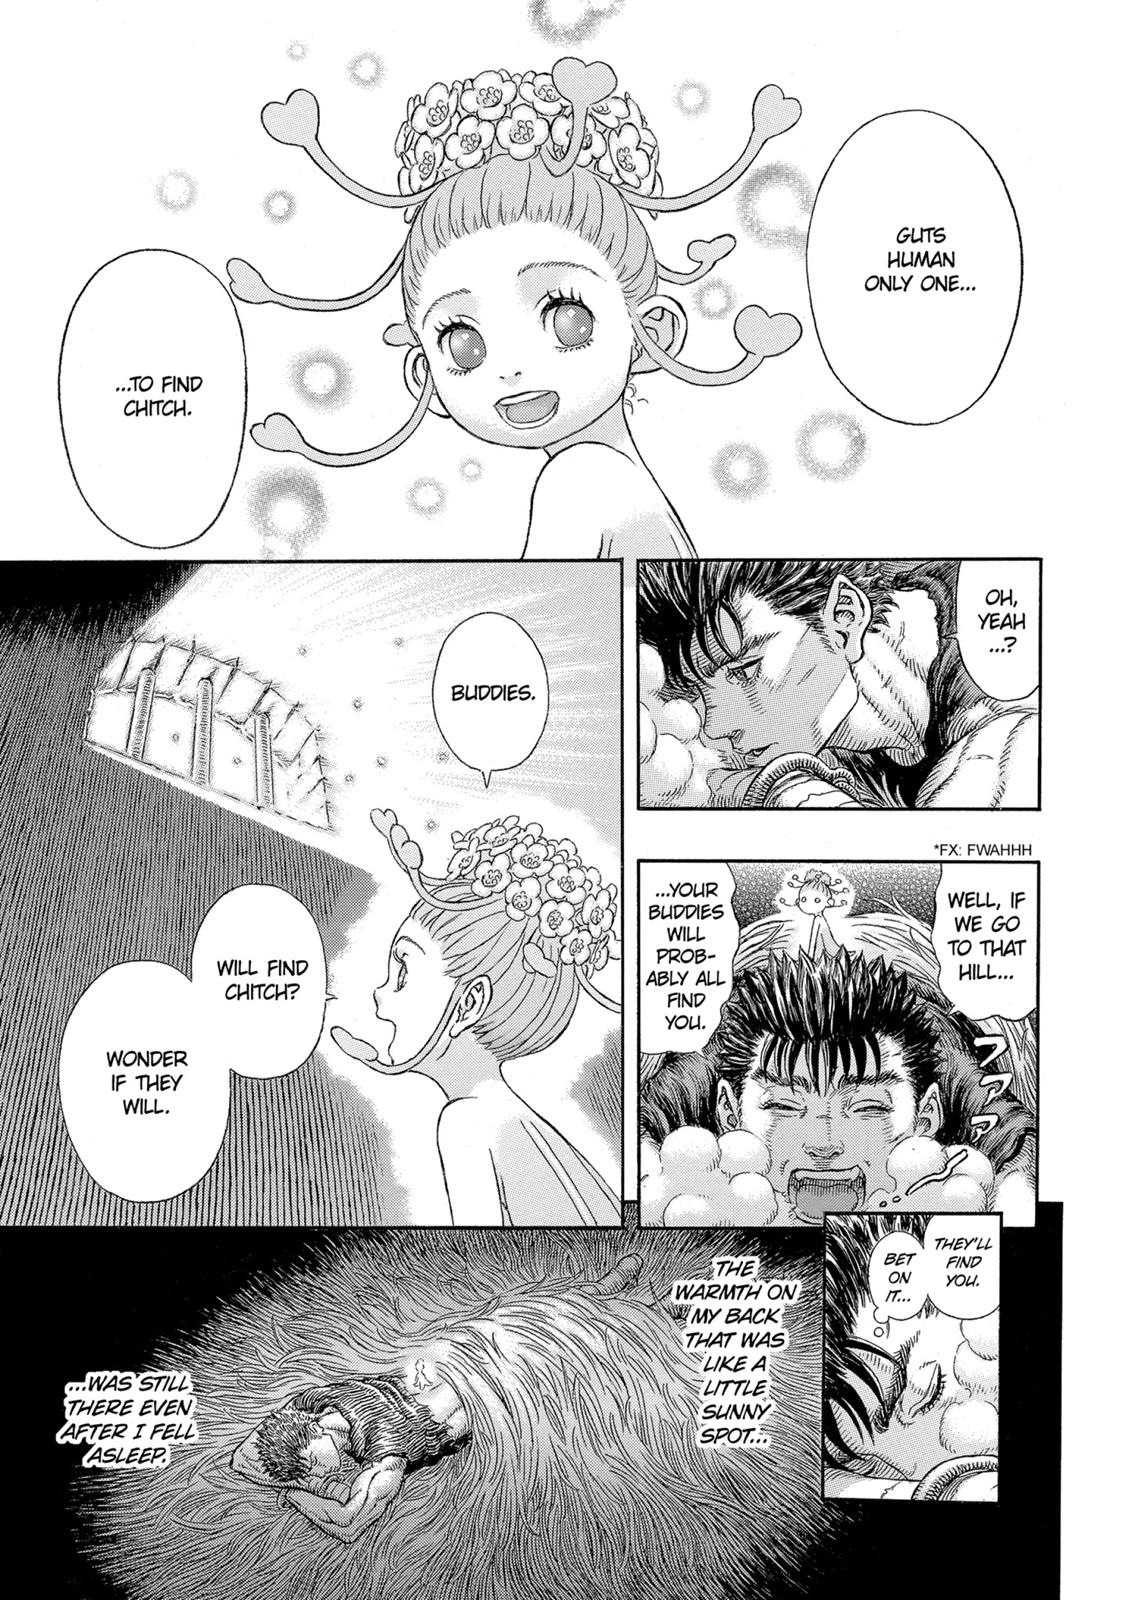 Berserk Manga Chapter 330 image 18